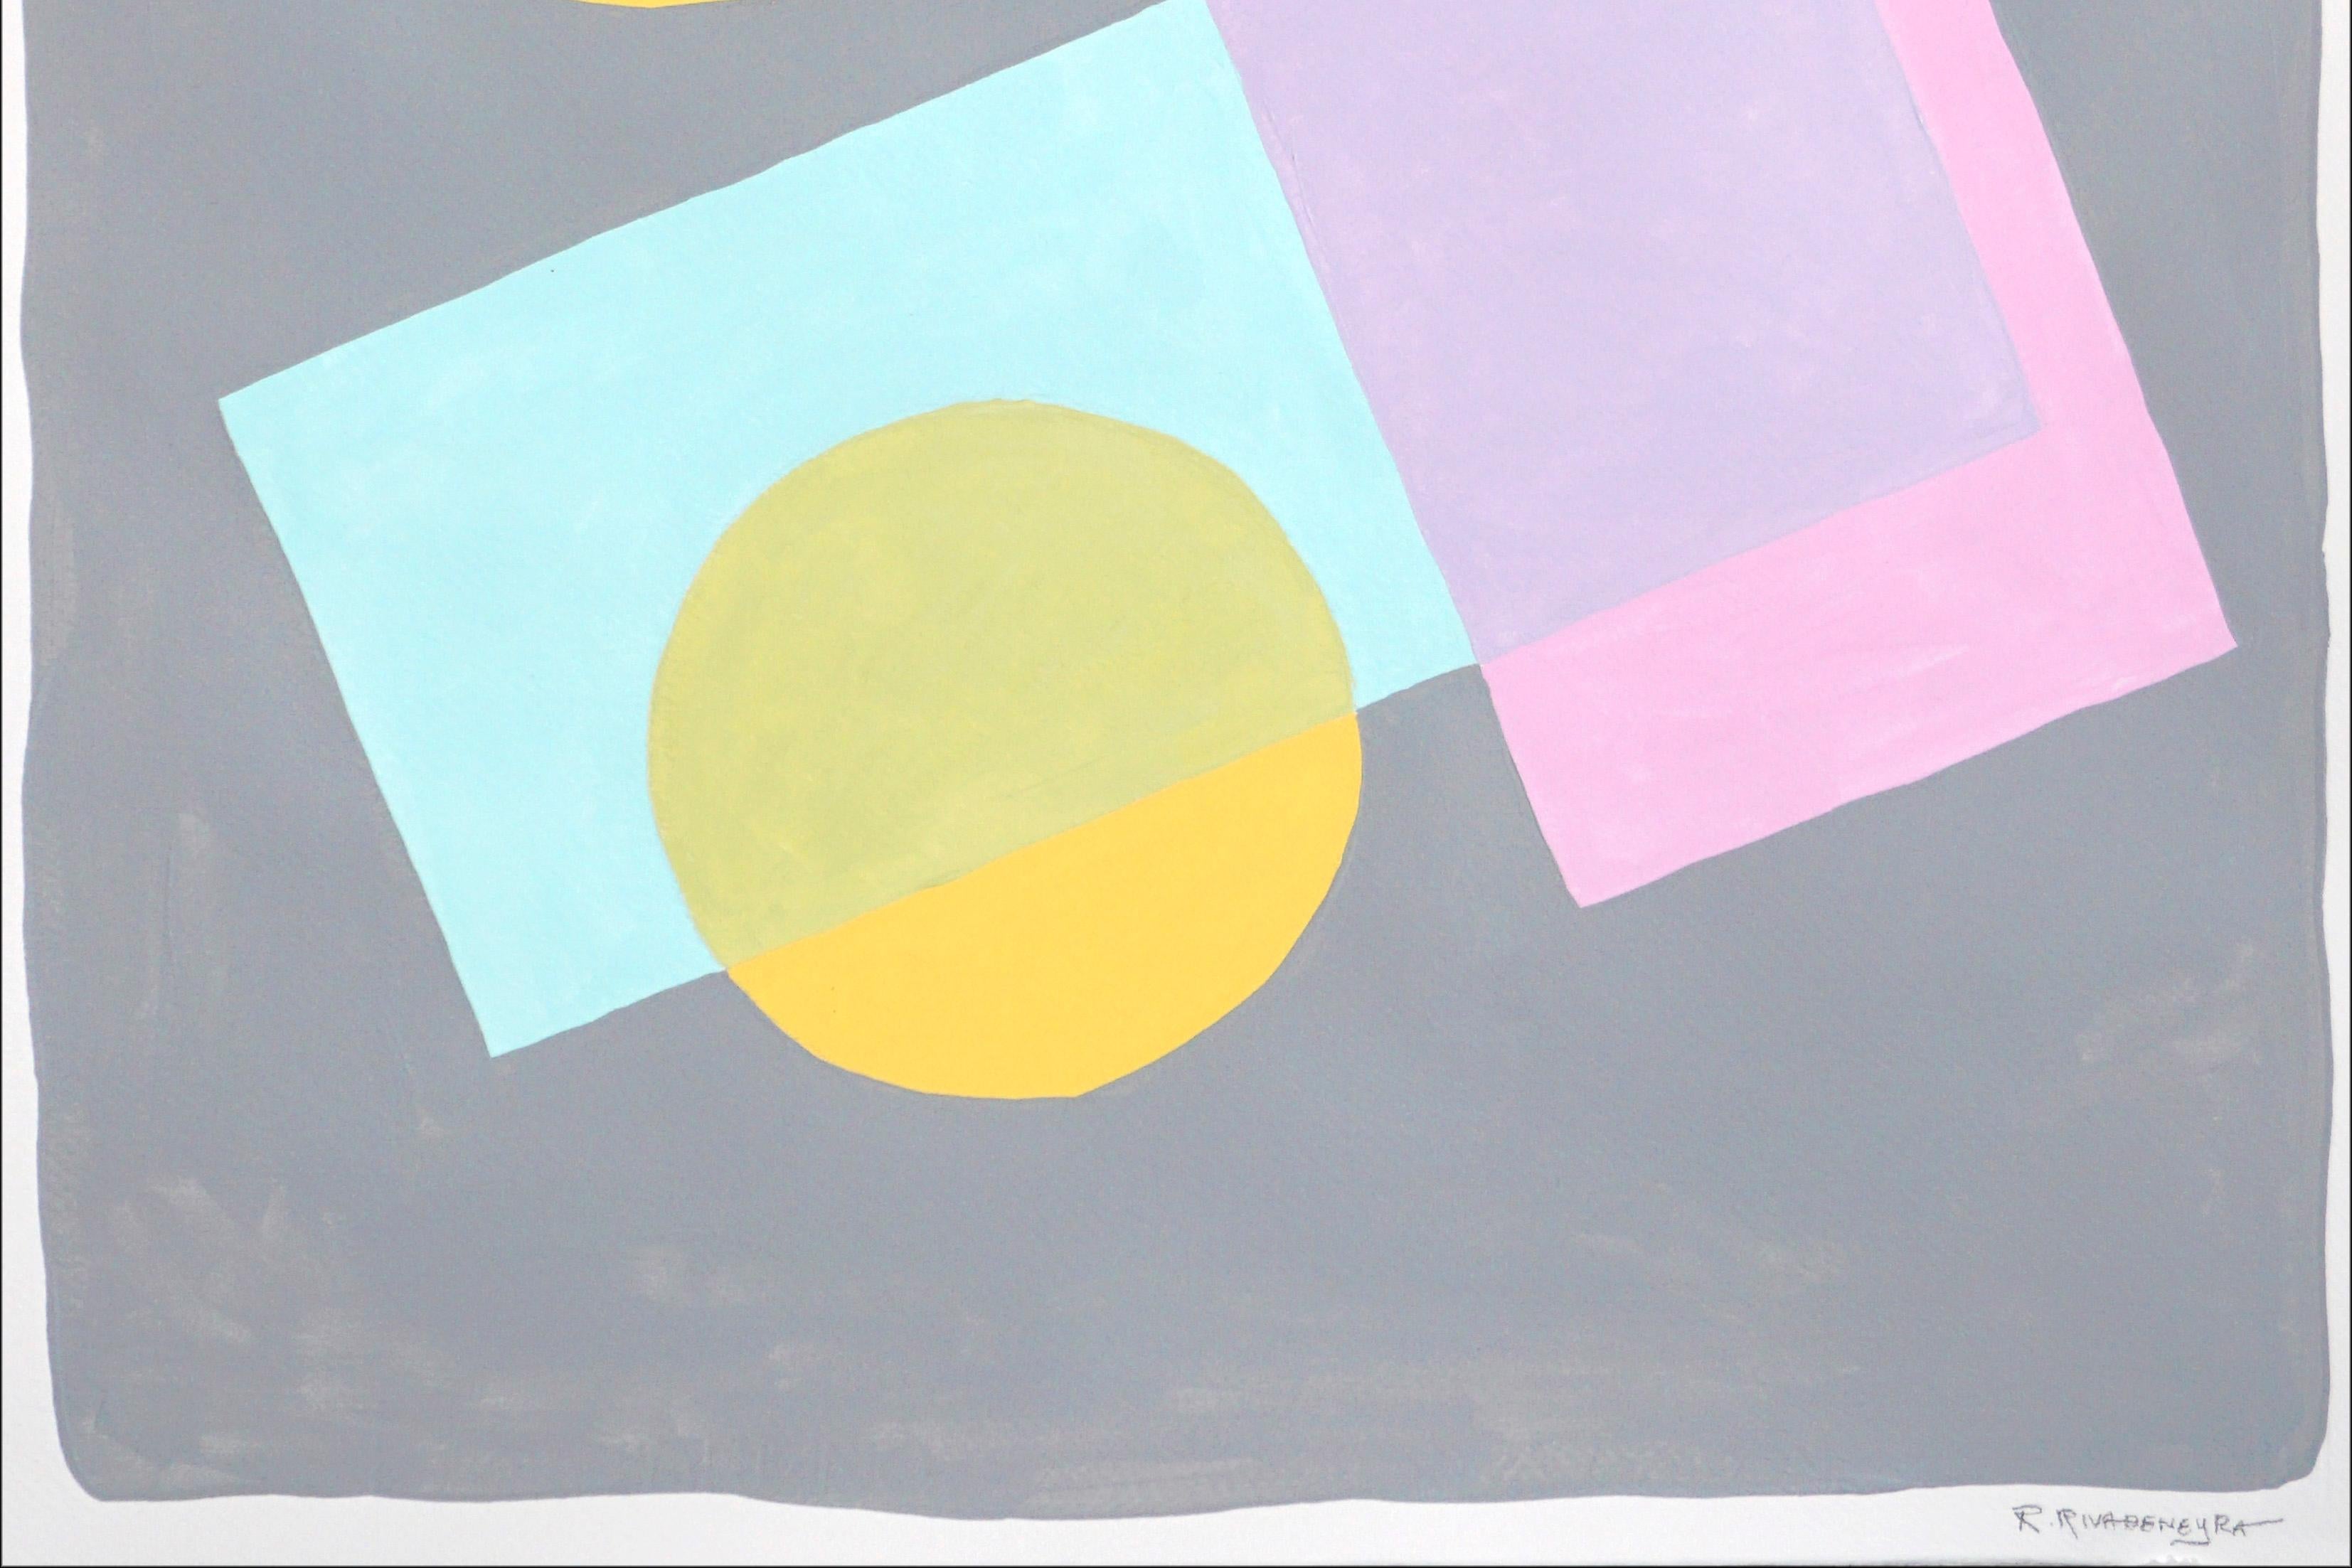 Konstruktivistische Formen in Pastell, weiche Töne, geometrisches Gemälde, Blau, Rosa, Gelb (Beige), Abstract Painting, von Ryan Rivadeneyra